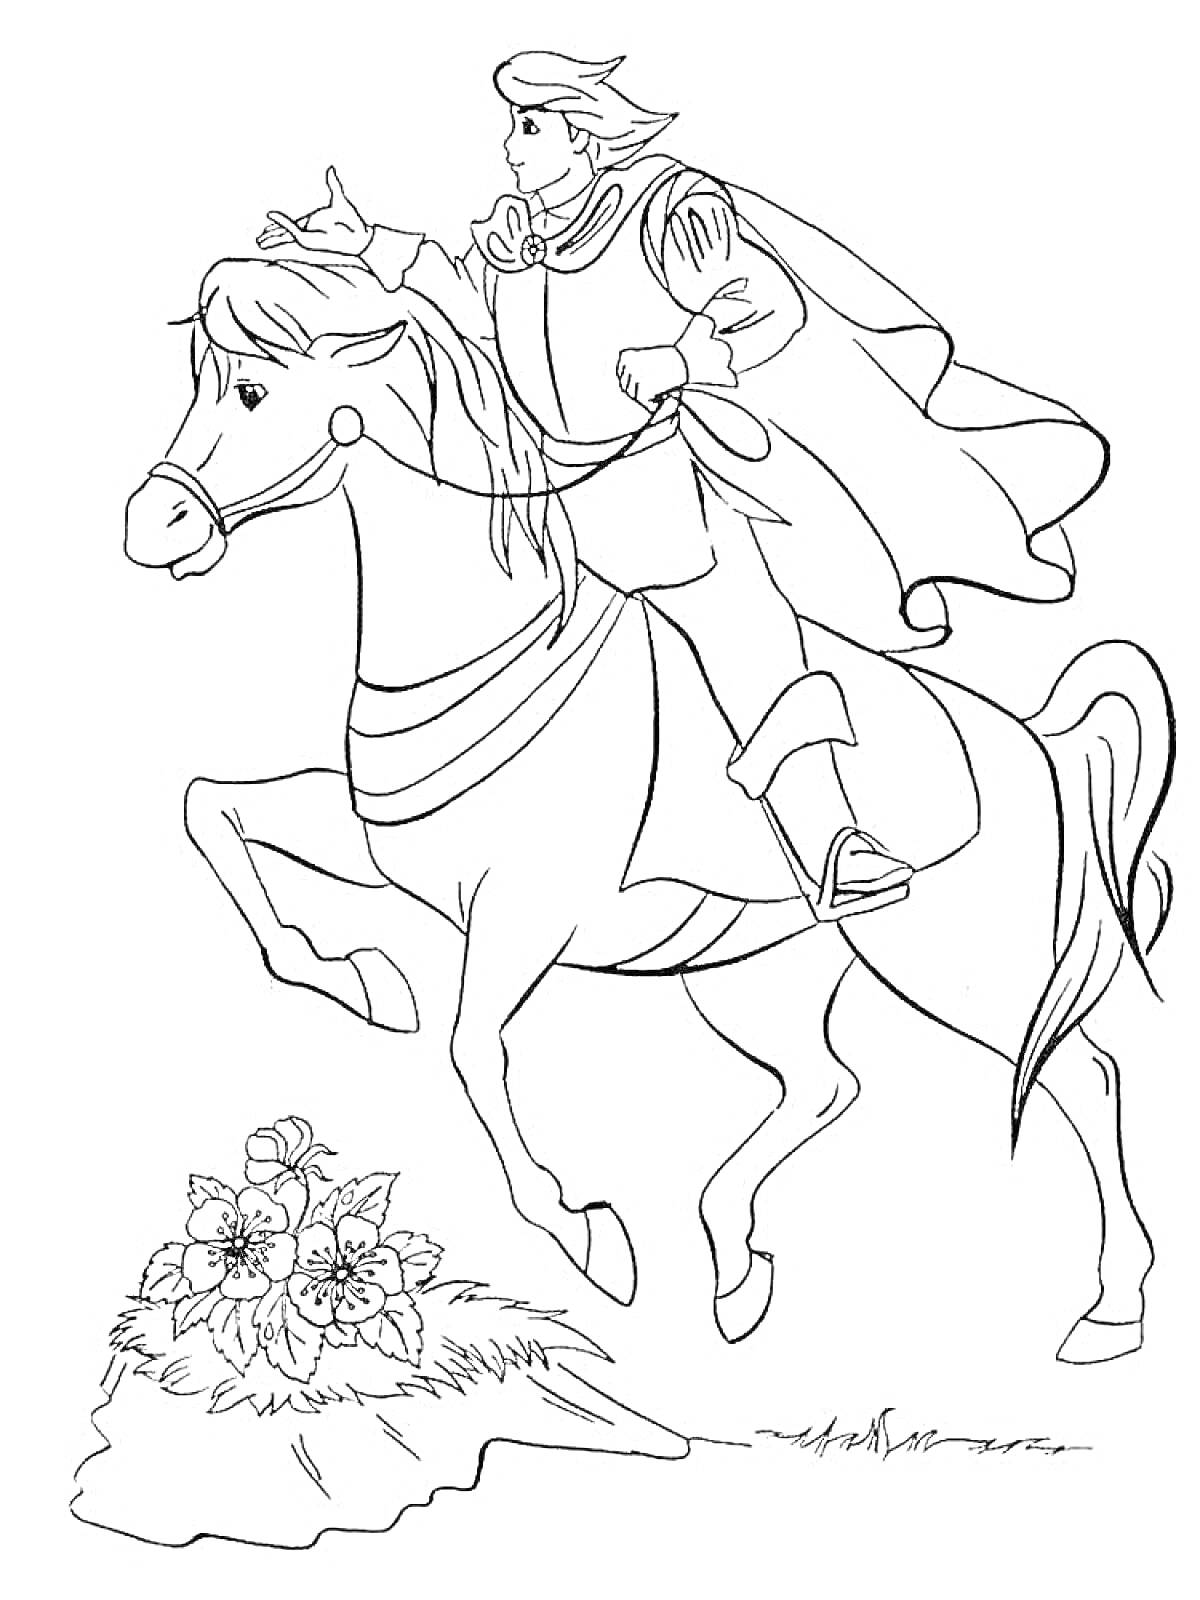 Всадник на лошади с поднятой рукой, перед цветами